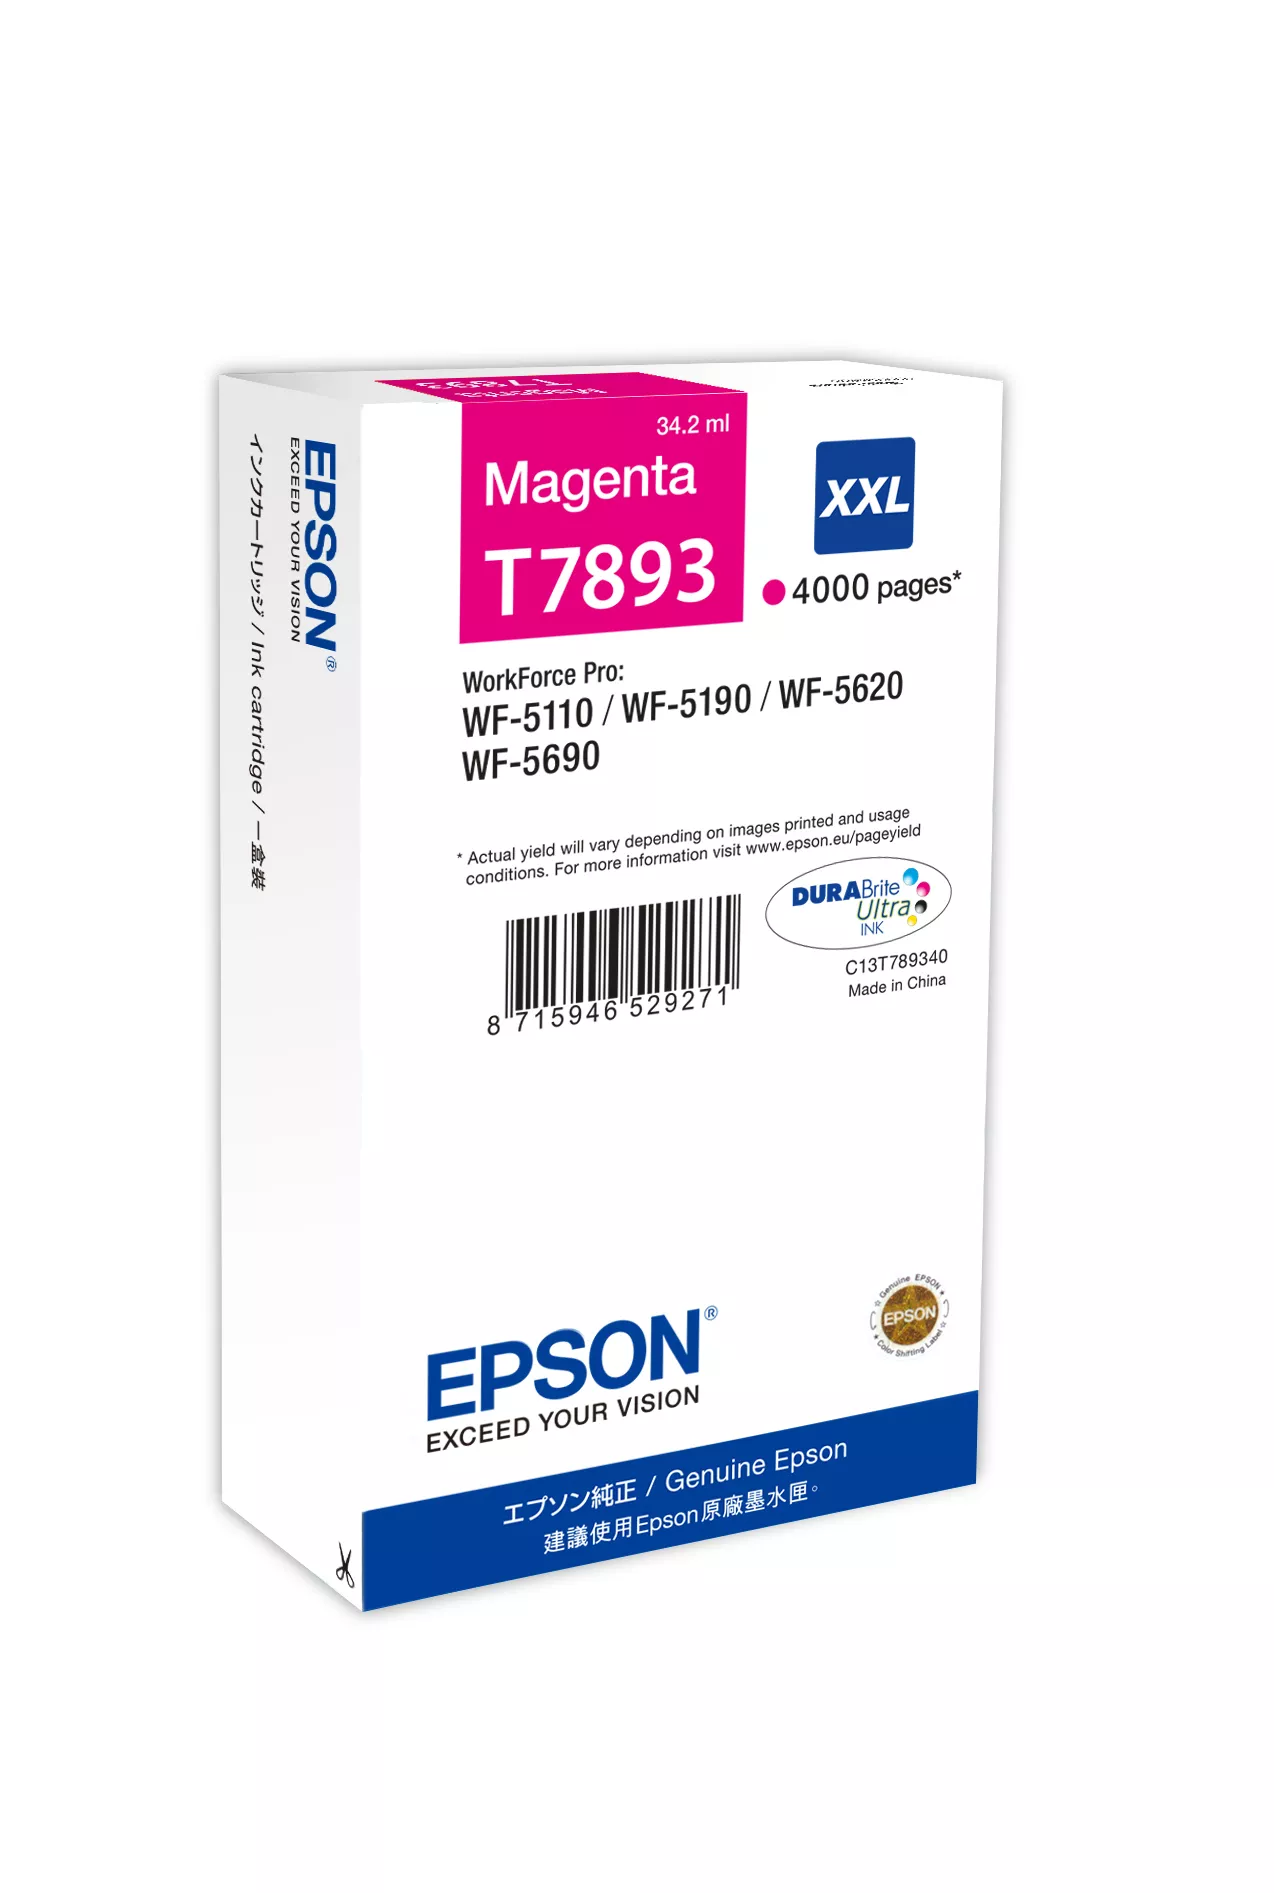 Achat EPSON T7893 cartouche d encre magenta très haute capacité au meilleur prix